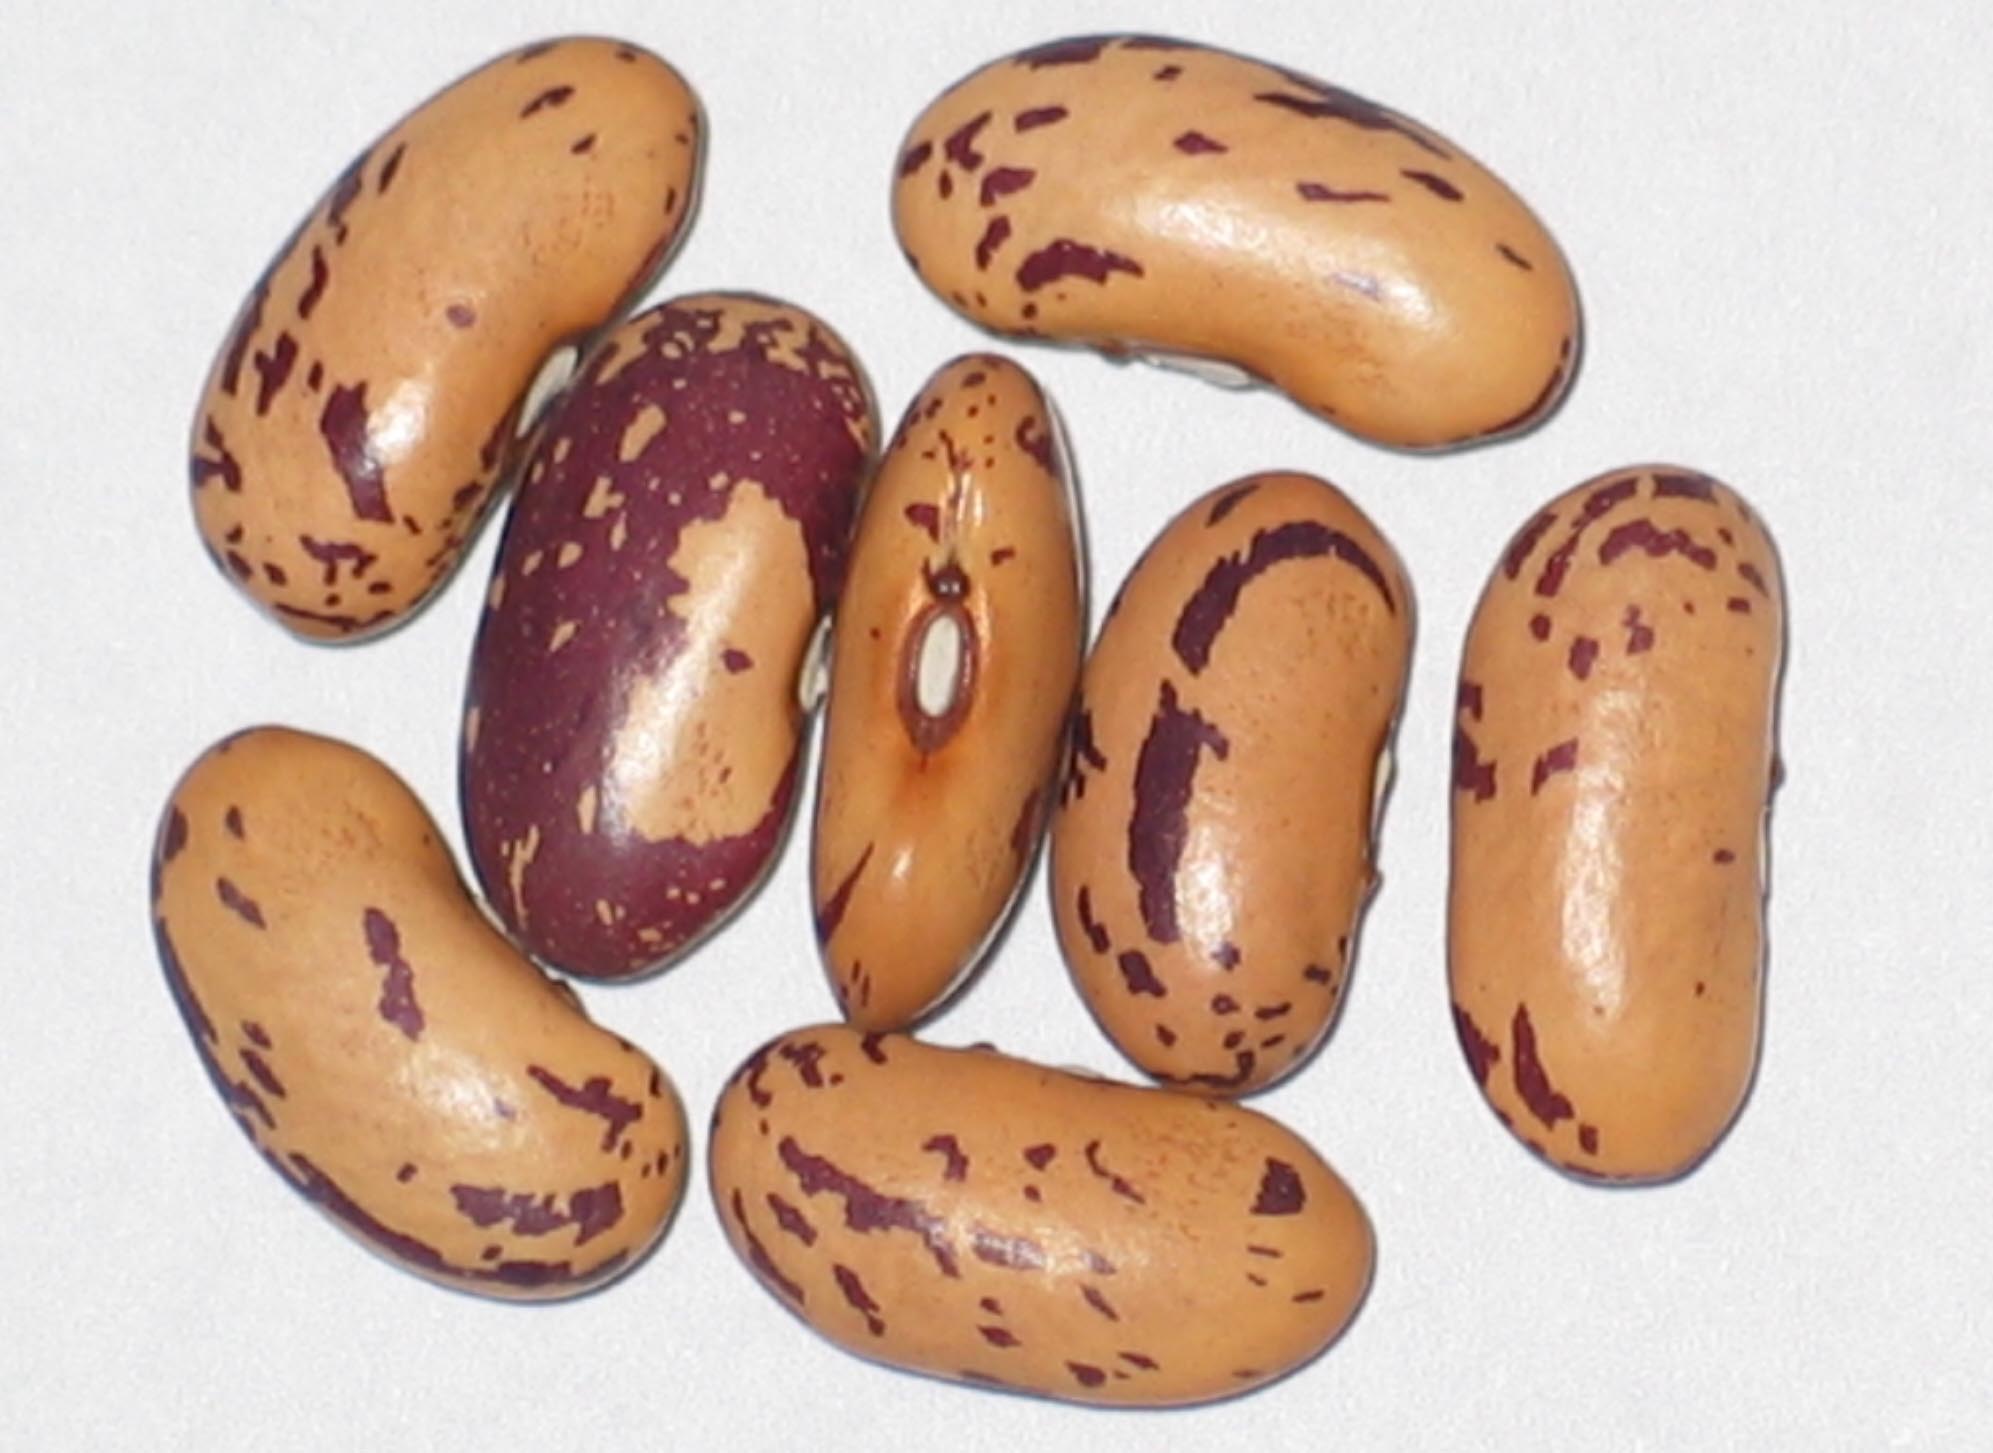 image of John's Bean beans